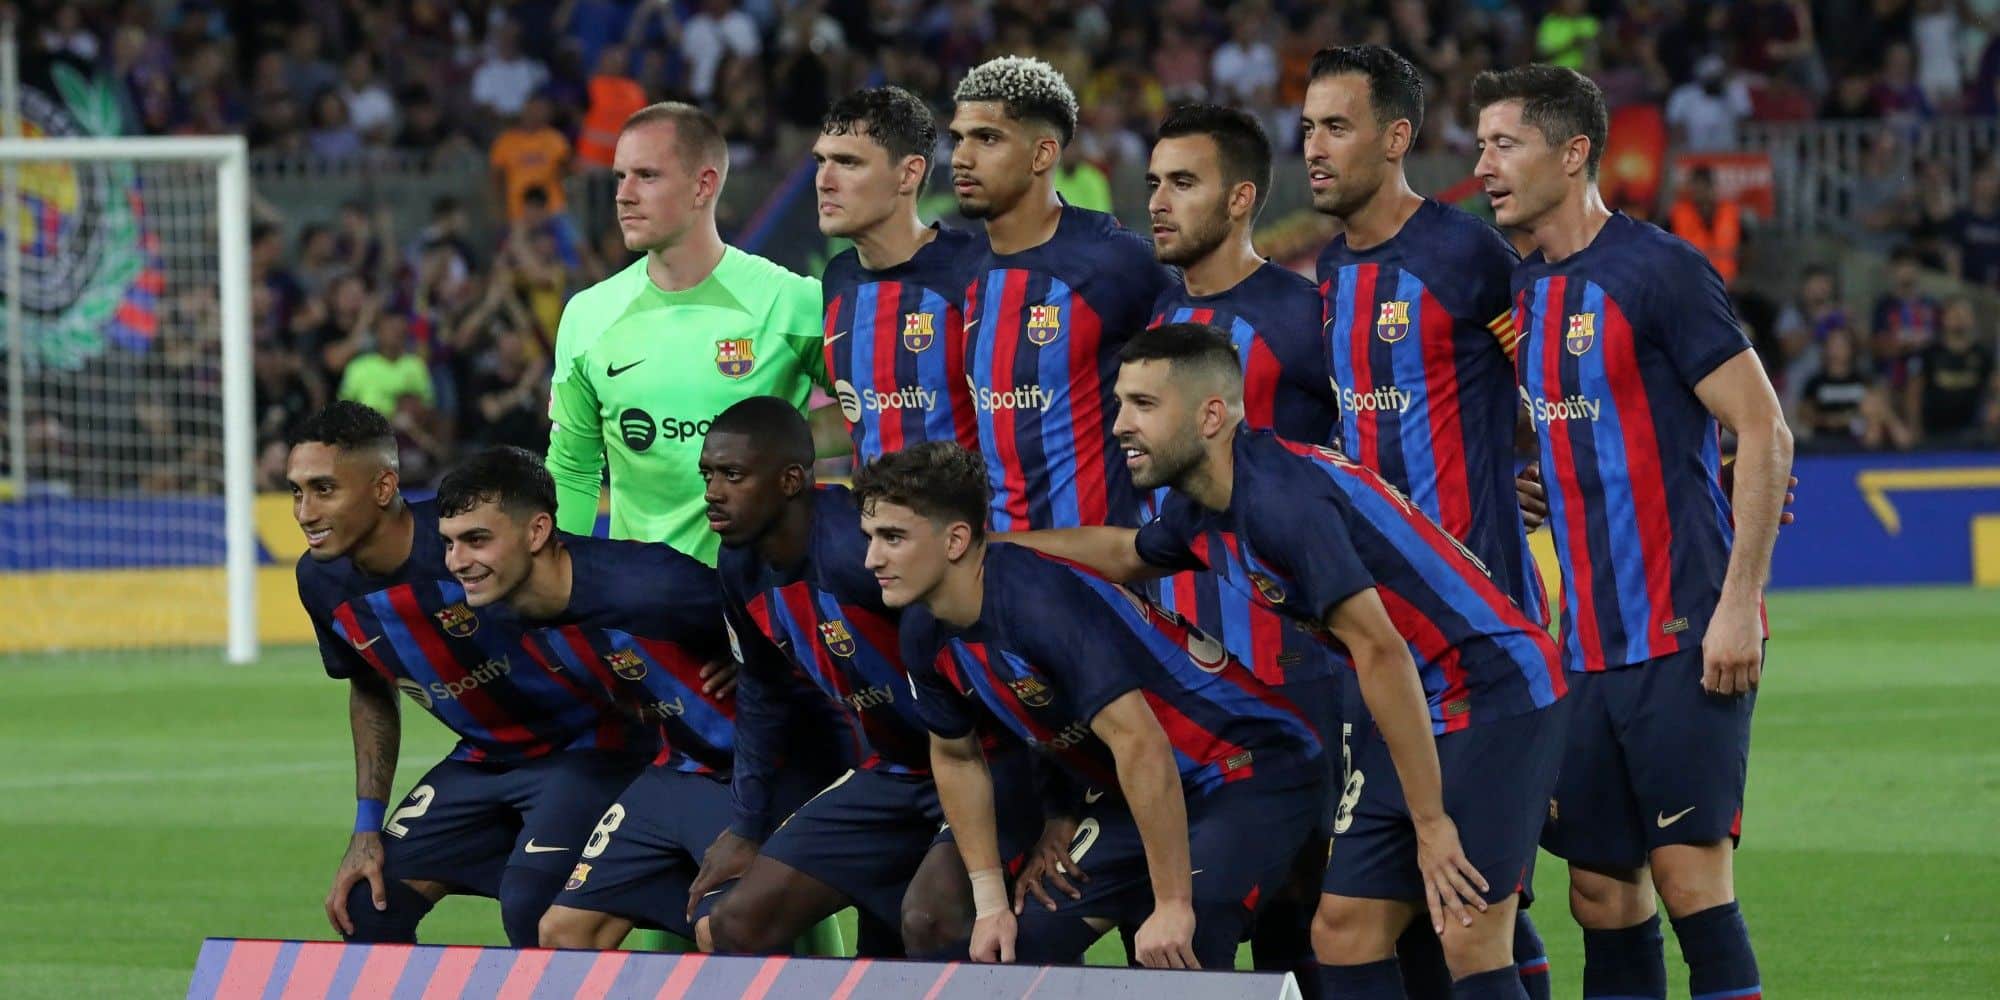 Photo: Le prochain maillot du FC Barcelone a fuité